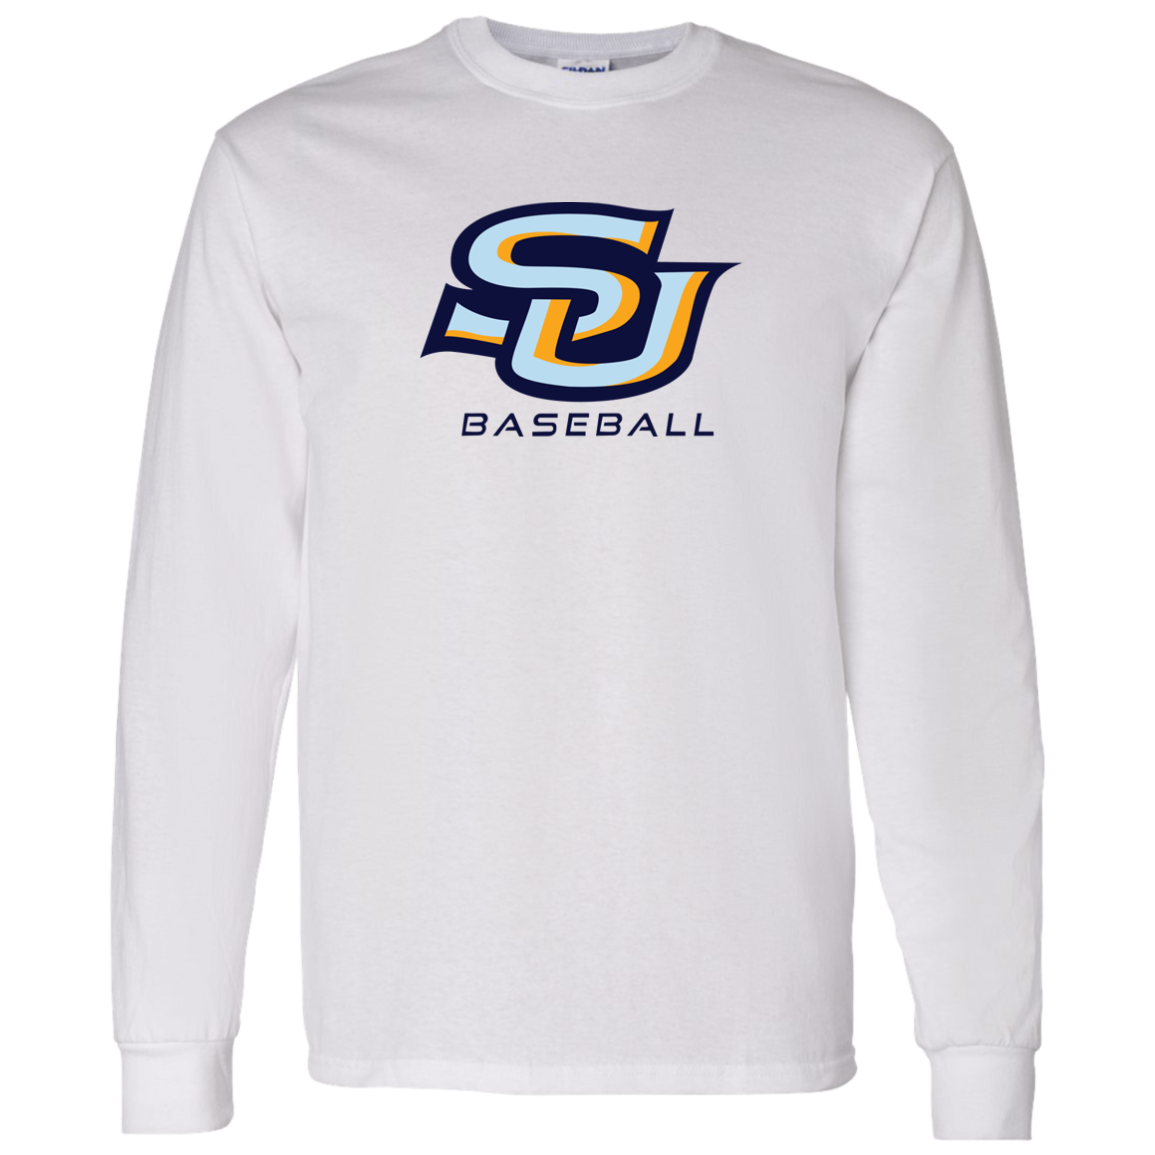 SU Baseball navy G540 LS T-Shirt 5.3 oz.